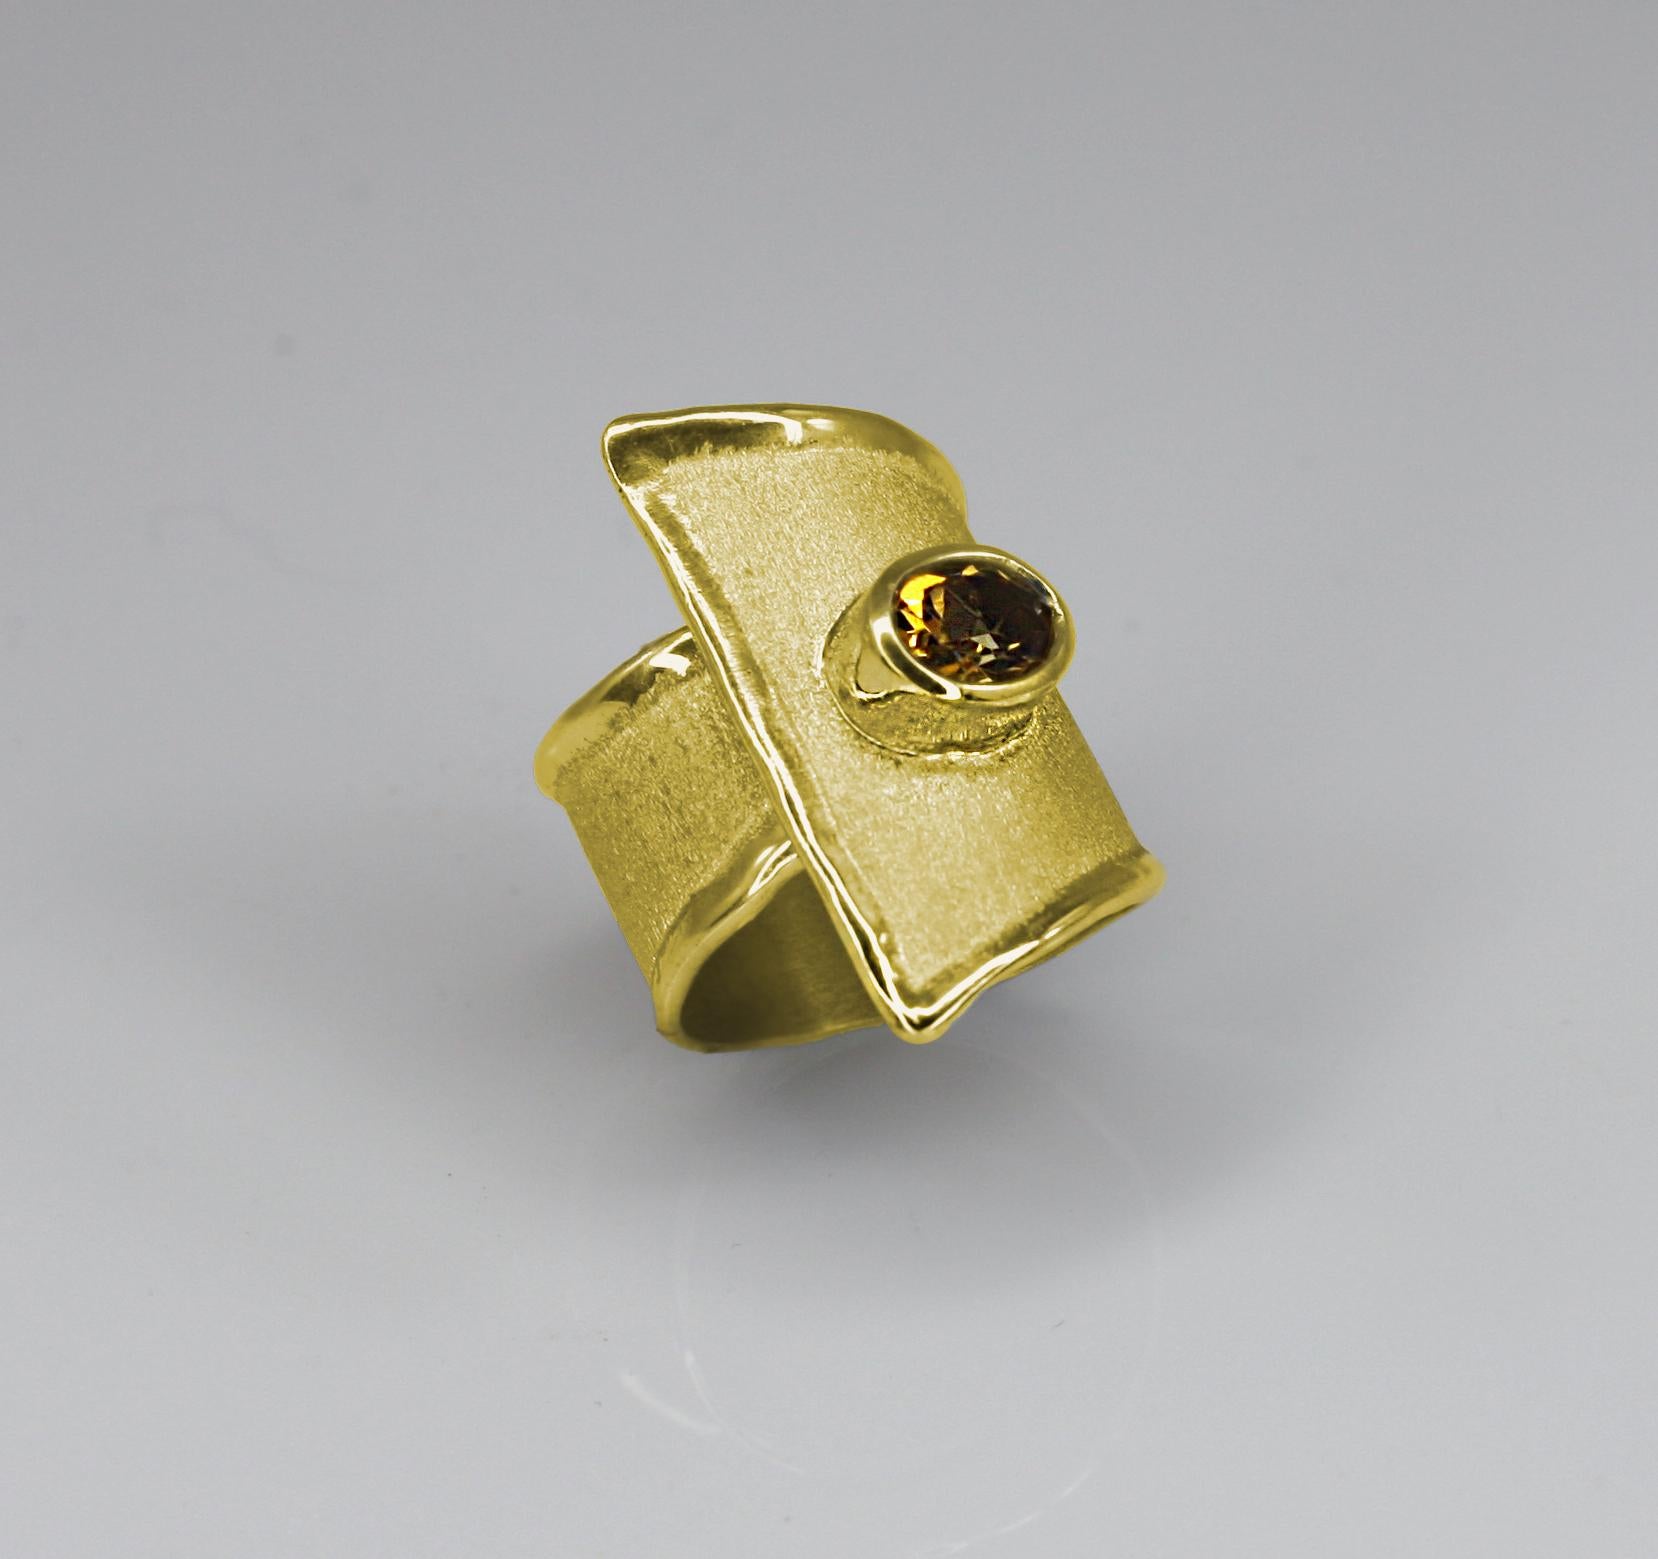 Yianni Creations handgefertigter, dreieckiger Ring aus 18 Karat Gelbgold. Der wunderschöne Ring ist mit einem ovalen Citrin von 1,25 Karat besetzt und verfügt über eine einzigartige Verarbeitungstechnik - byzantinische Bürste und flüssige Kante. Der